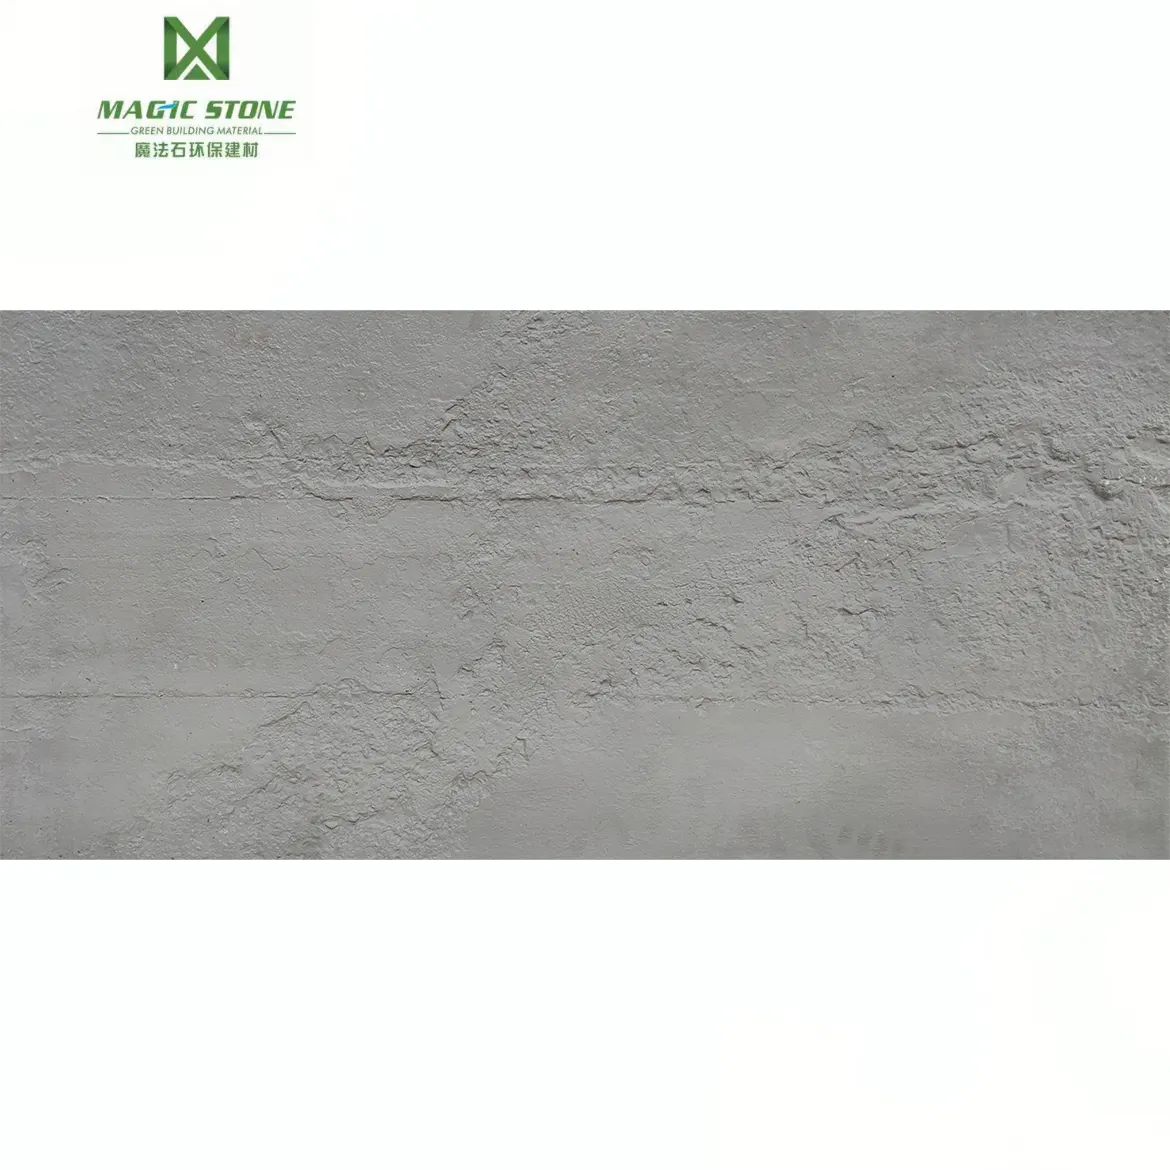 MS MCM esnek ince seramik MS beton kurulu 2900x600mm dış duvar dekorasyonu taş